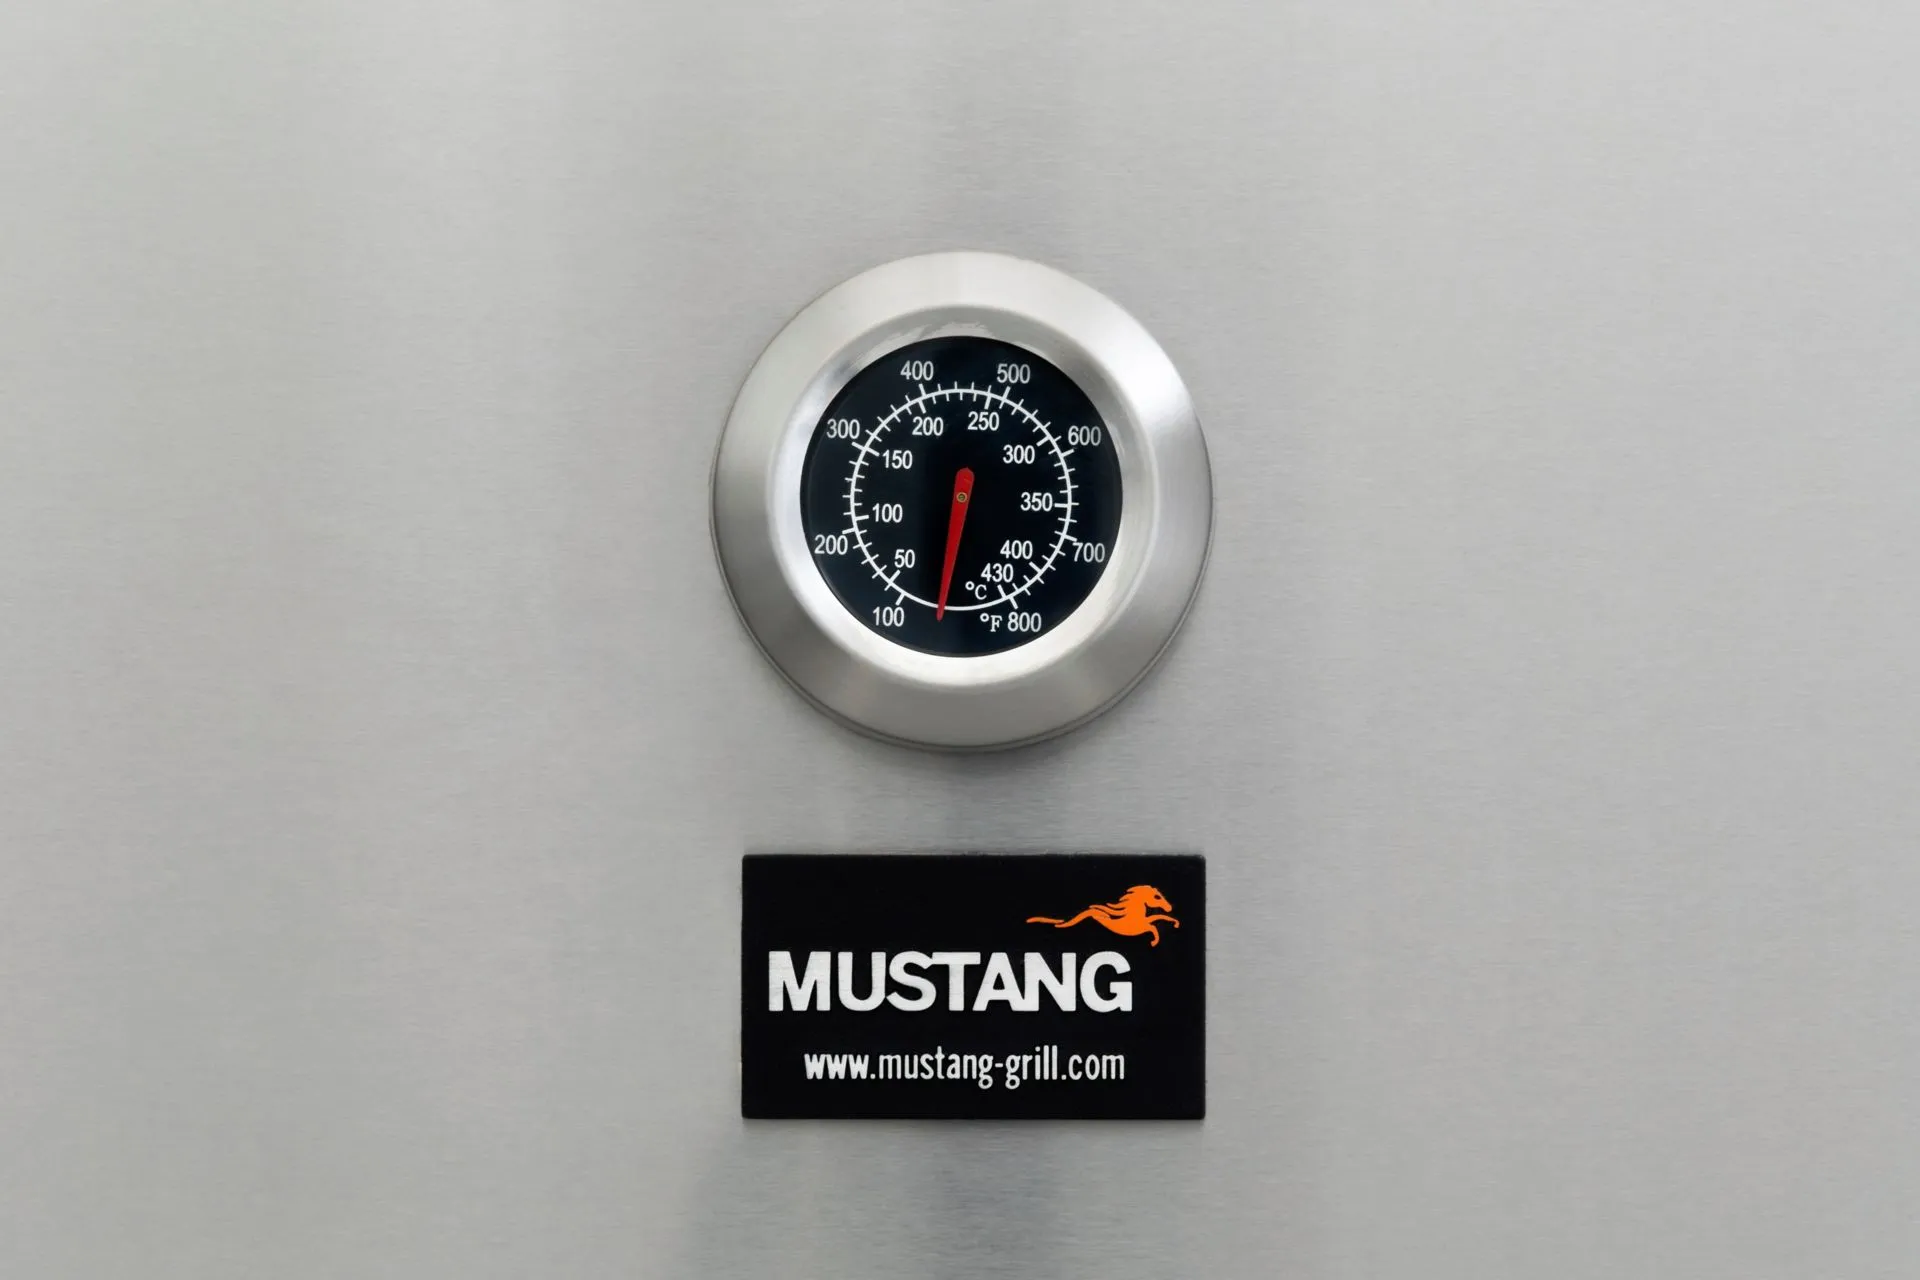 Mustang Kaasugrilli Ametist 6+2 kesäkeittiö jääkaapilla - 7